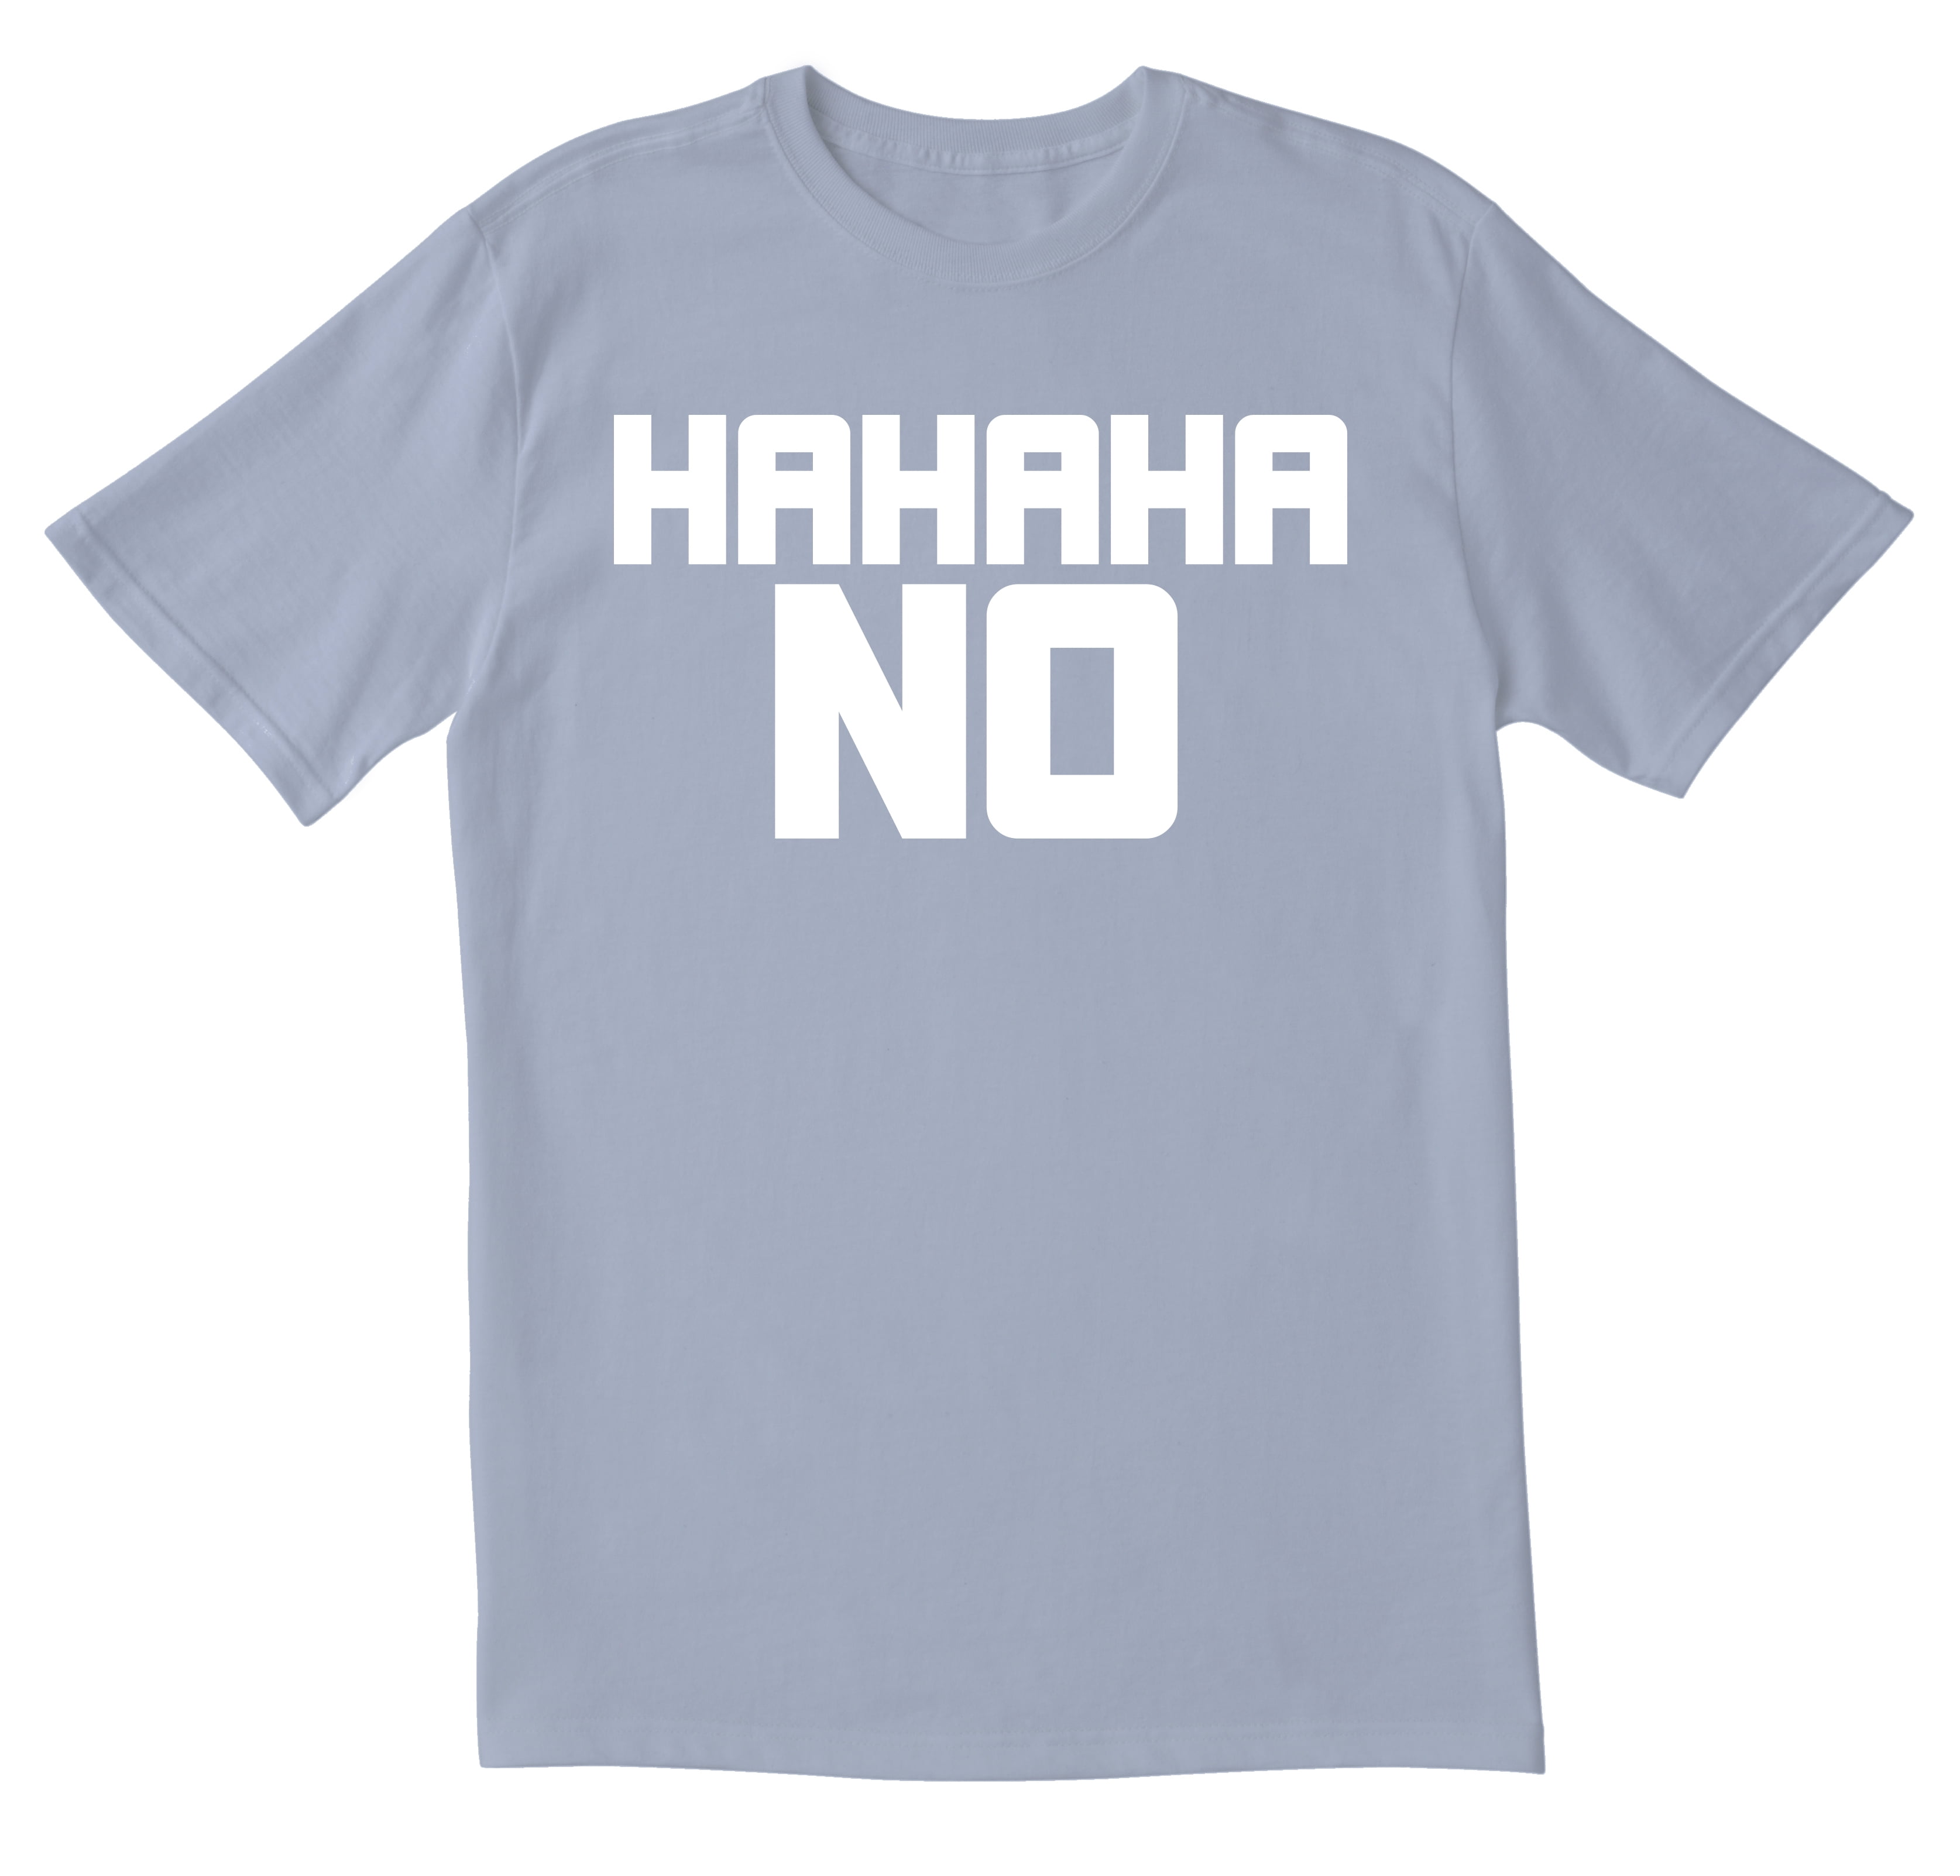 Ha Ha Ha Ha No Mens T-Shirt 